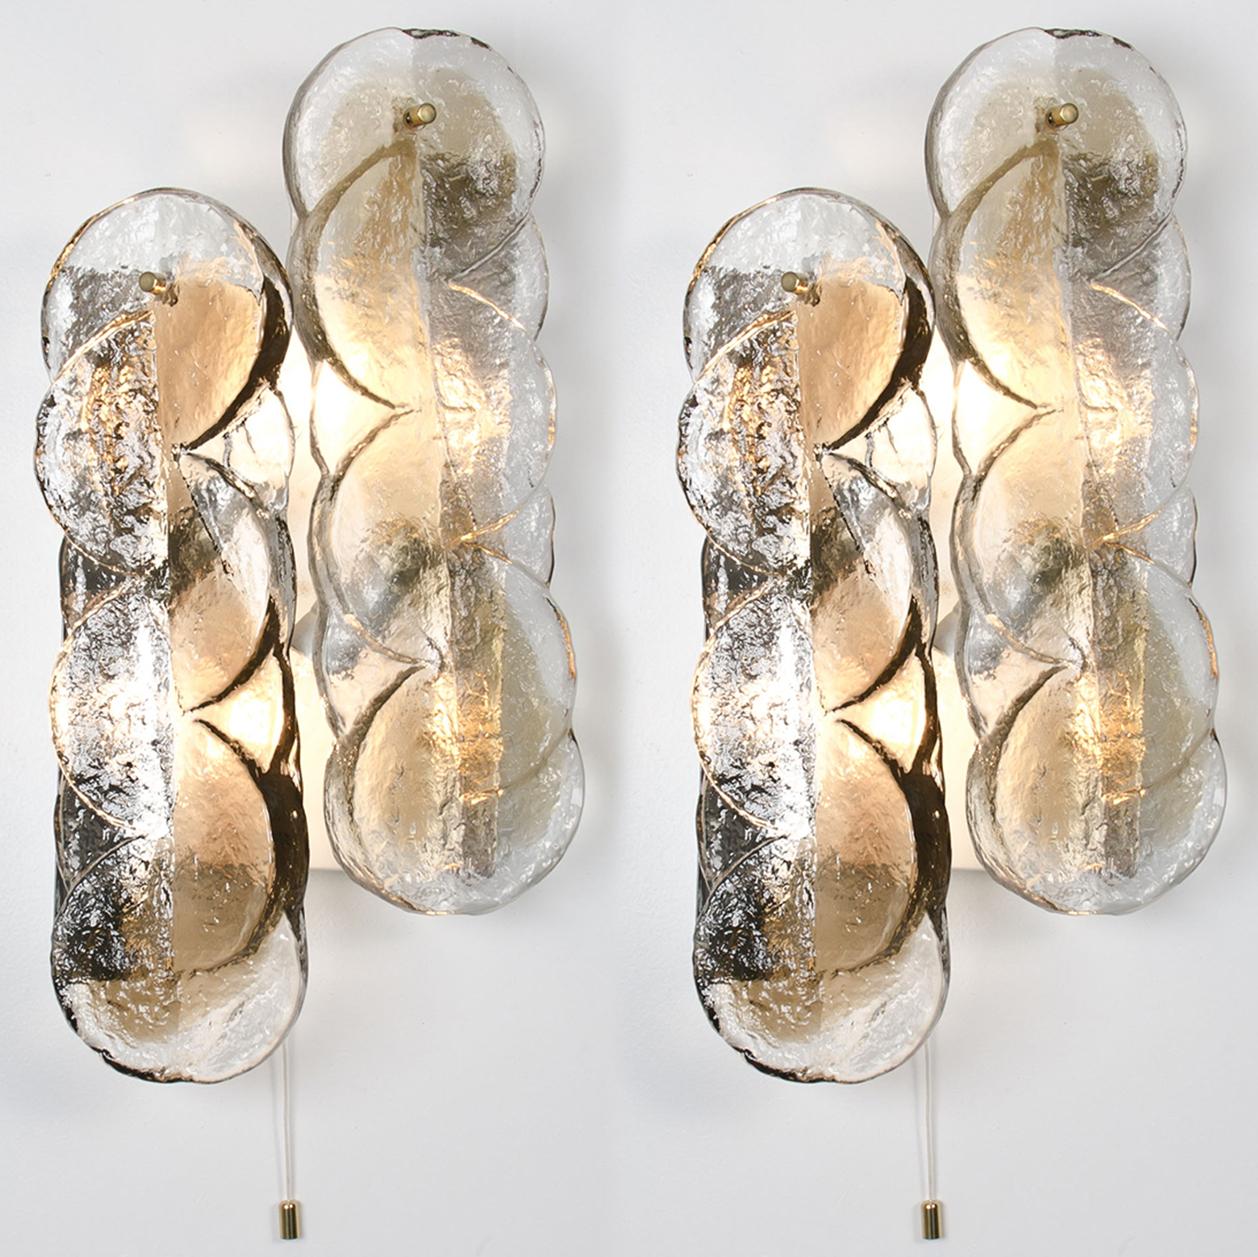 Ensemble de luminaires en verre de Murano de haute qualité par Kalmar, années 1960. Panneaux en cristal clair torsadé avec une bande de couleur or clair et ambre. Illumine magnifiquement.

Kalmar était le plus important producteur de lustres de